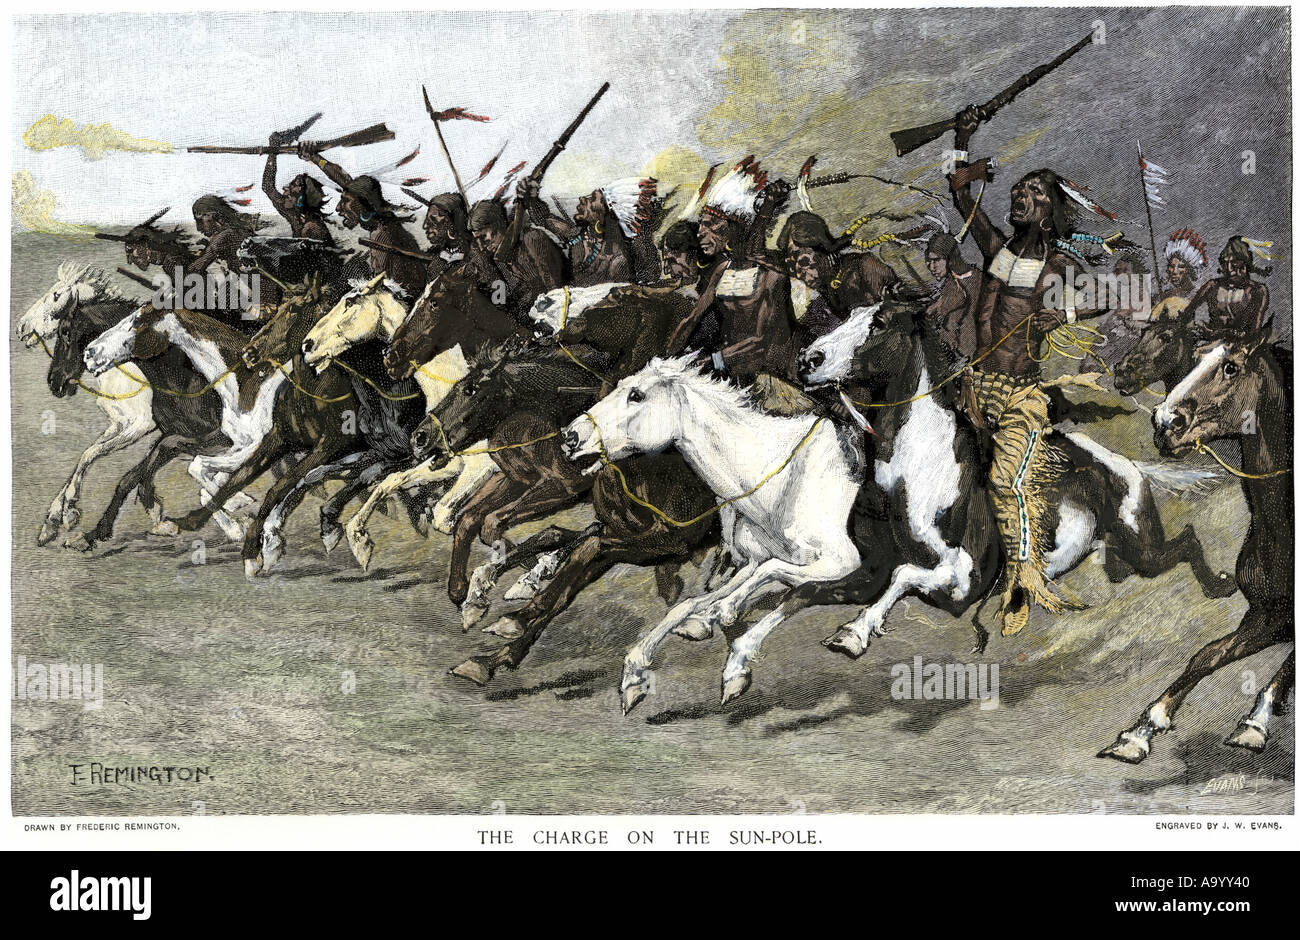 La charge des guerriers sioux pôle sun sur l'années 1800. À la main, gravure sur bois, d'une illustration Frederic Remington Banque D'Images